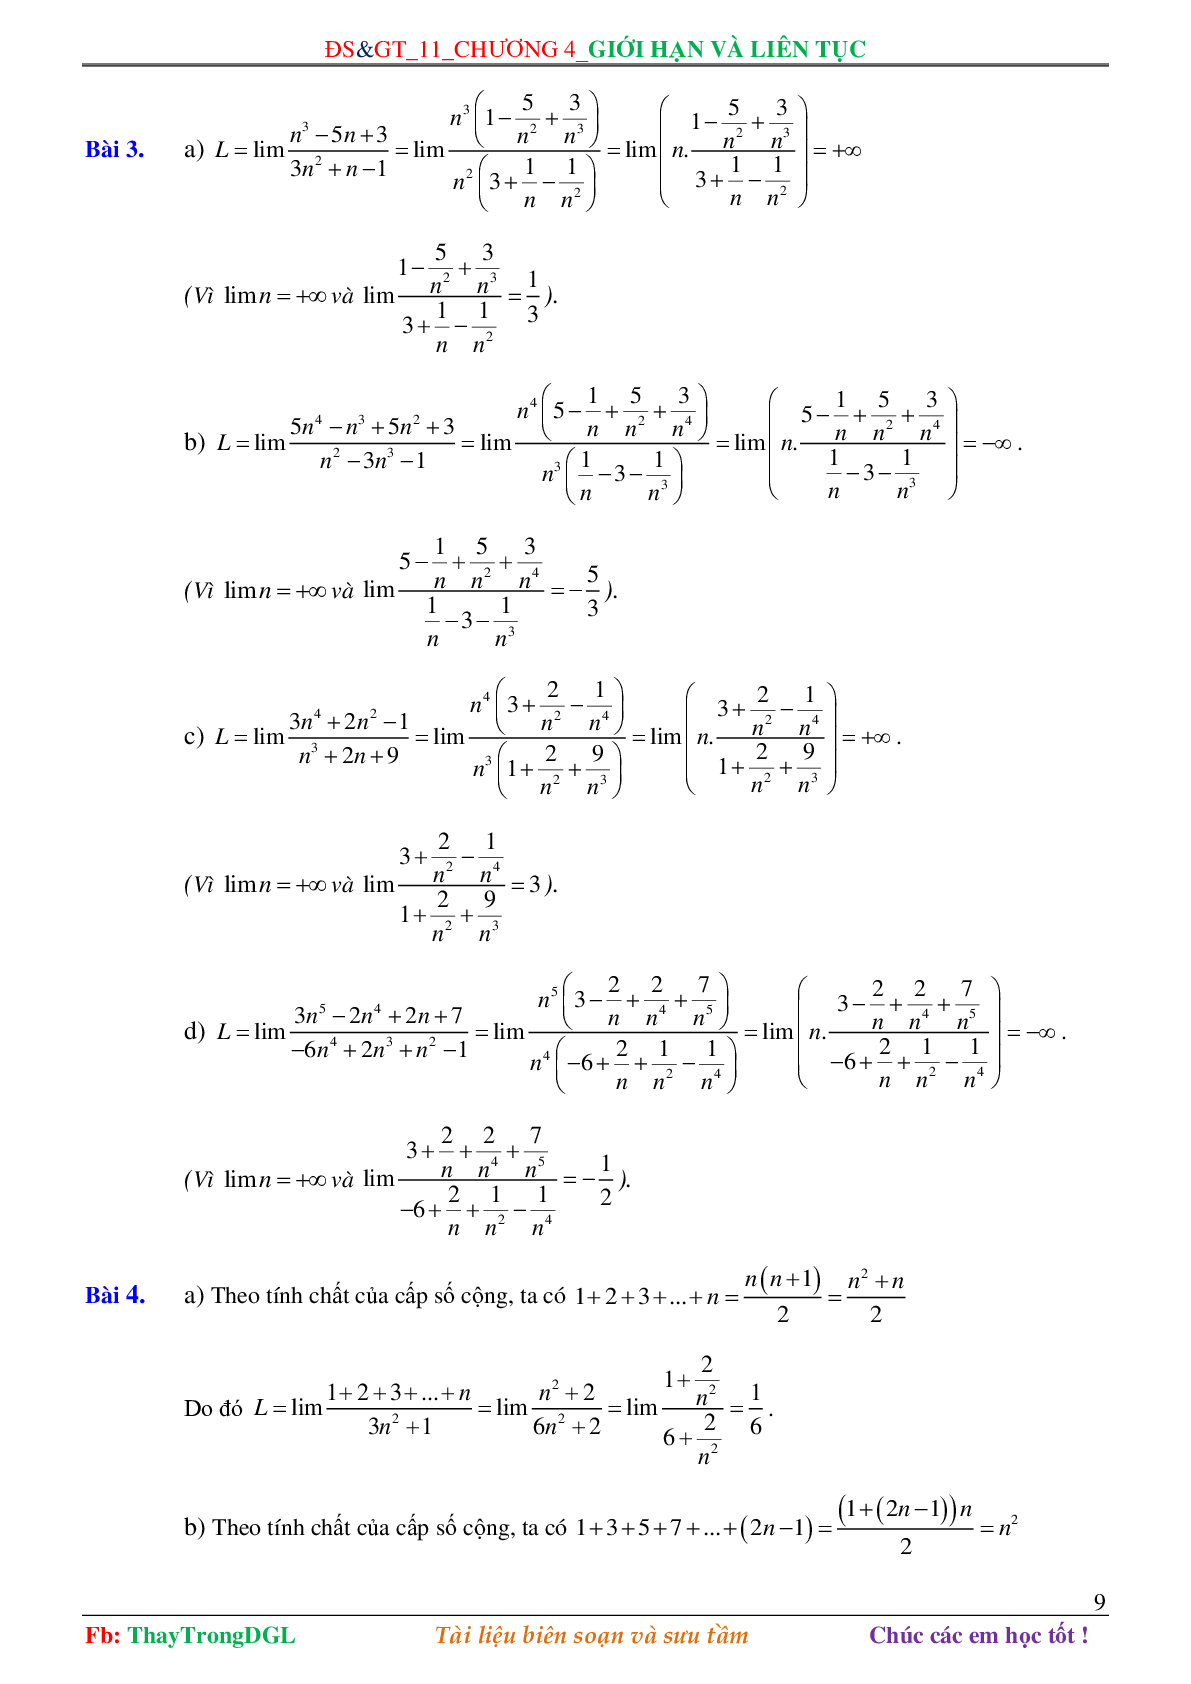 Các dạng toán về Giới hạn và liên tục (có bài tập kèm theo) (trang 9)